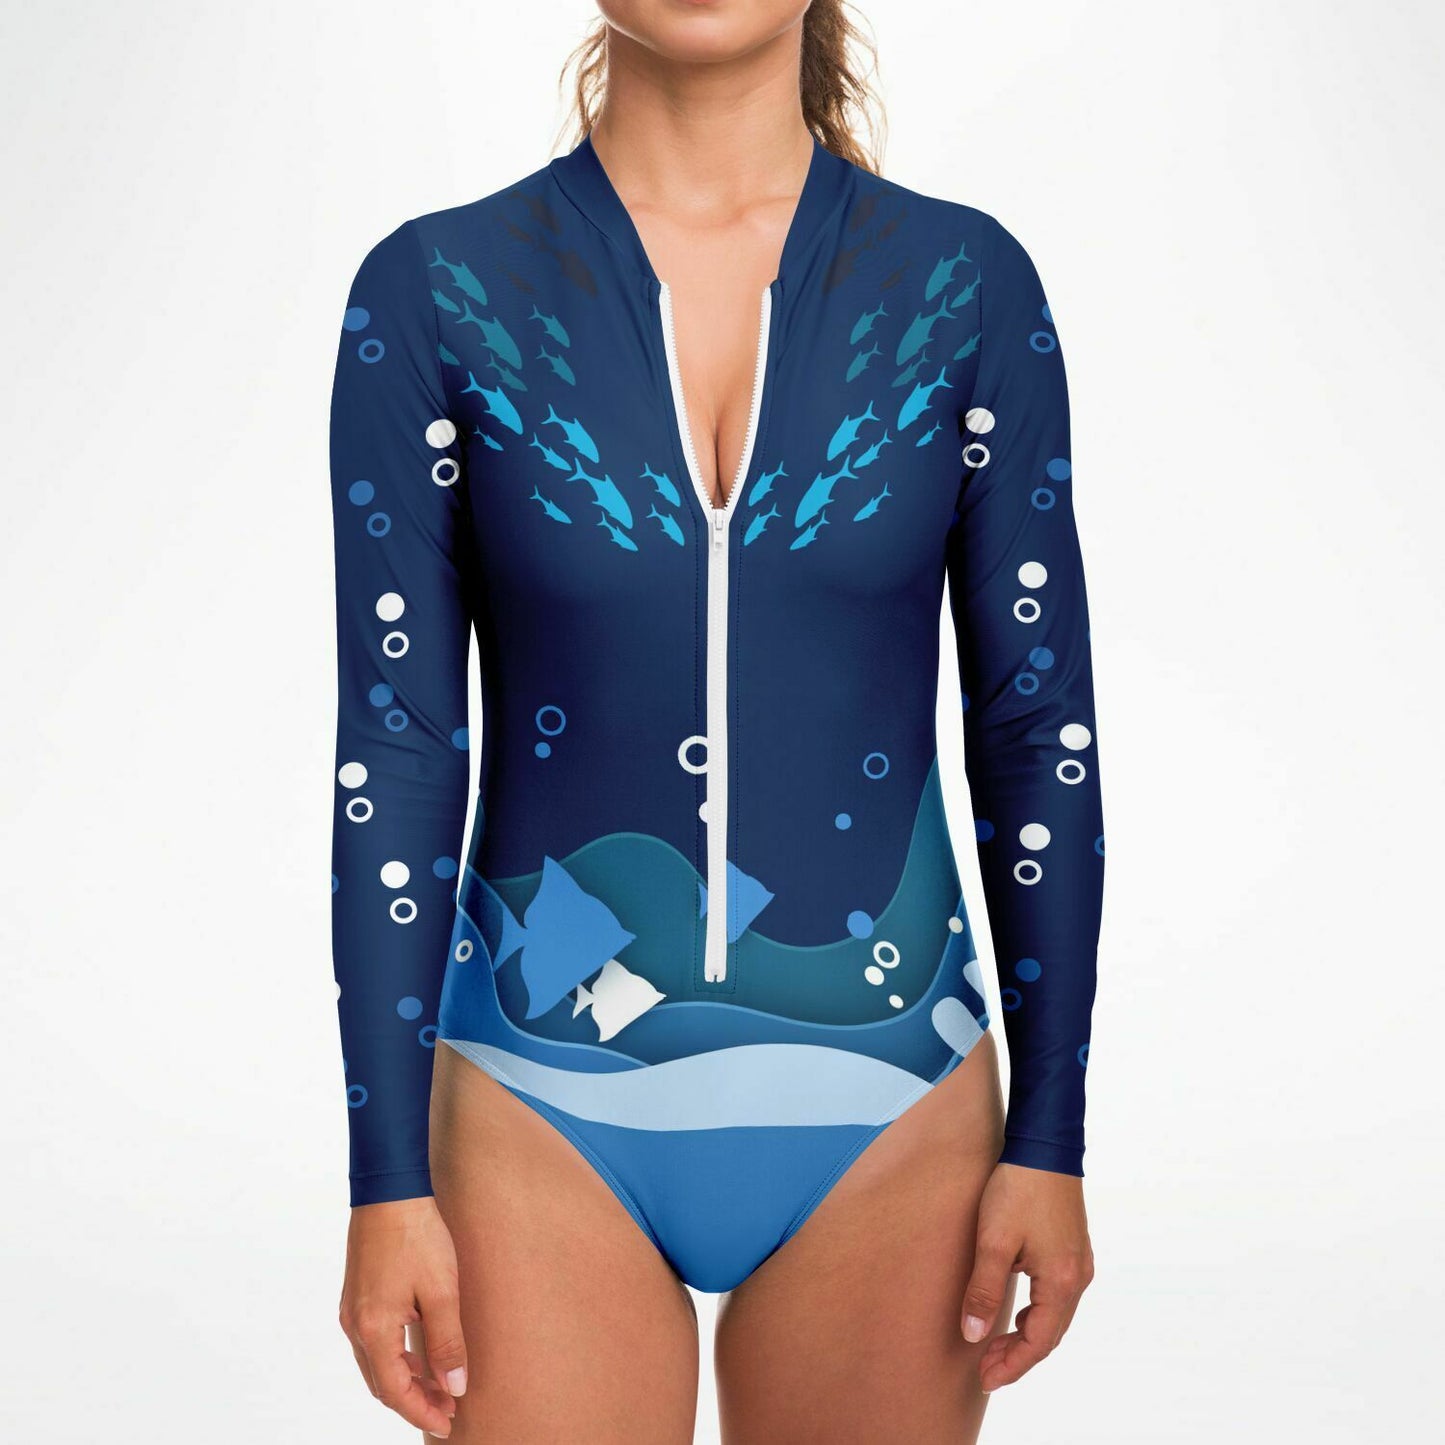 Ocean Life Bodysuit